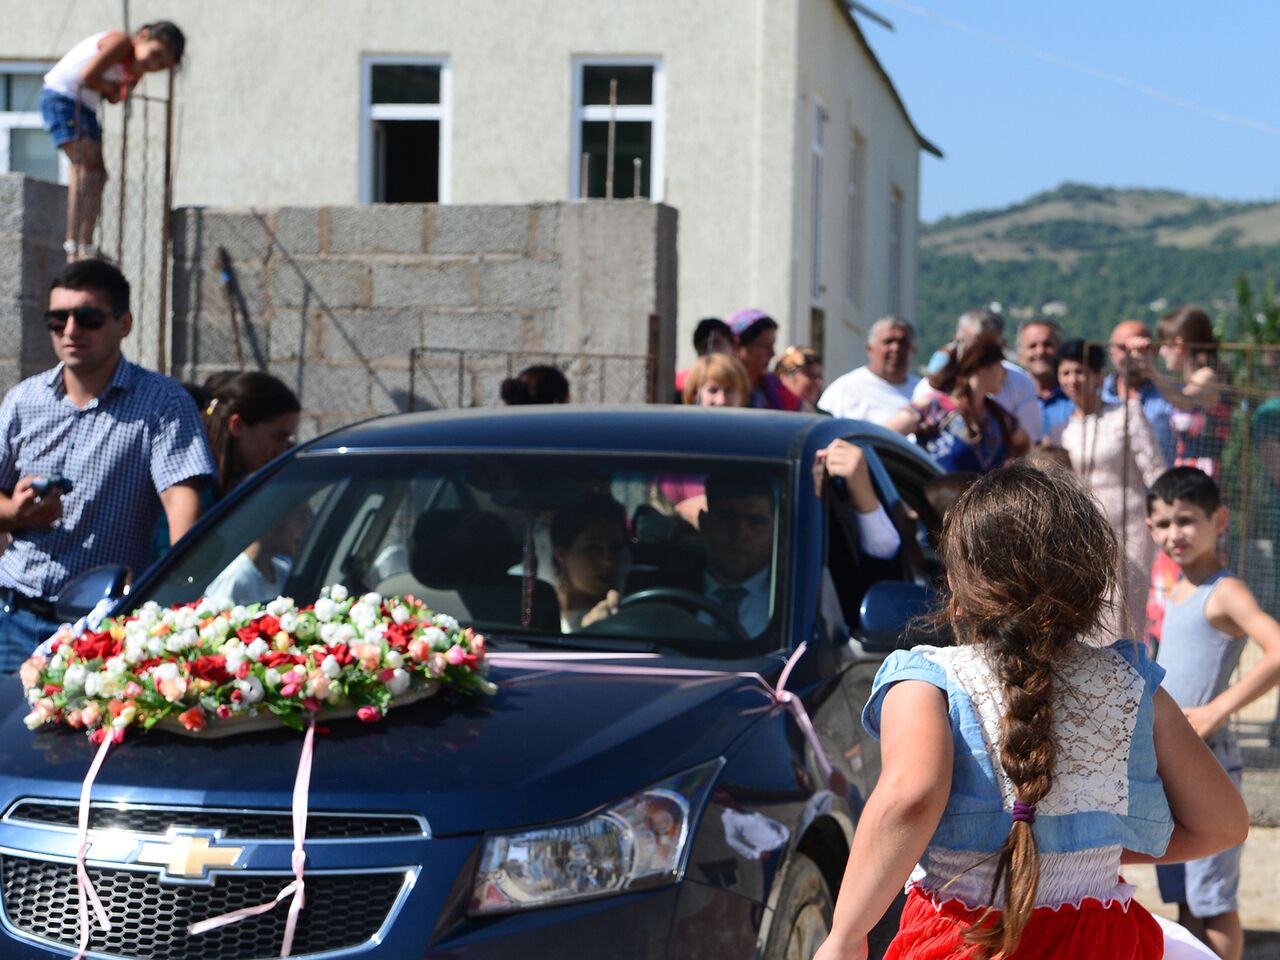 Свадьба В Ингушетии